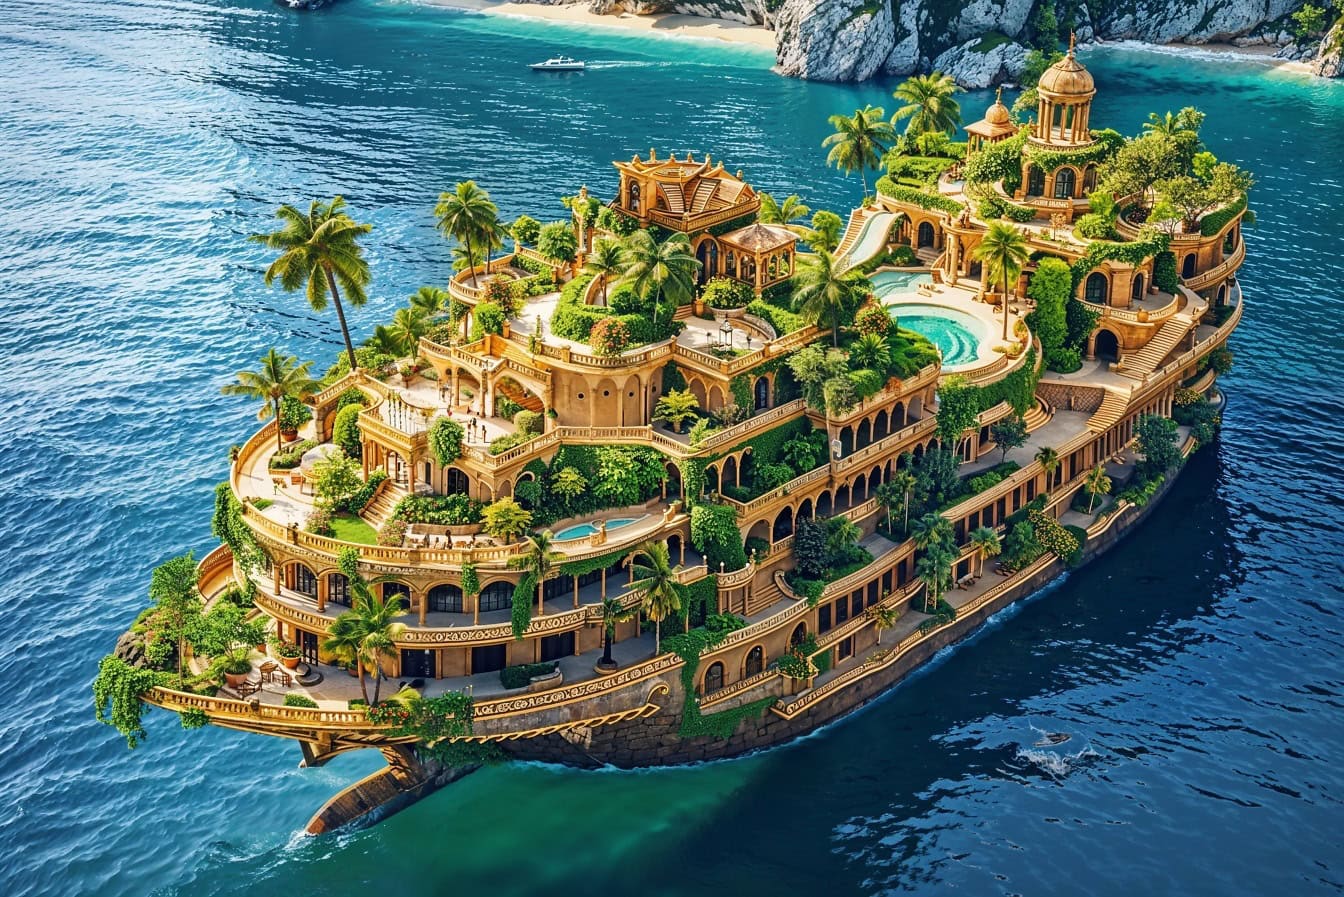 Una veduta aerea dell’esclusiva nave da crociera di lusso su sette piani con piante tropicali e piscina